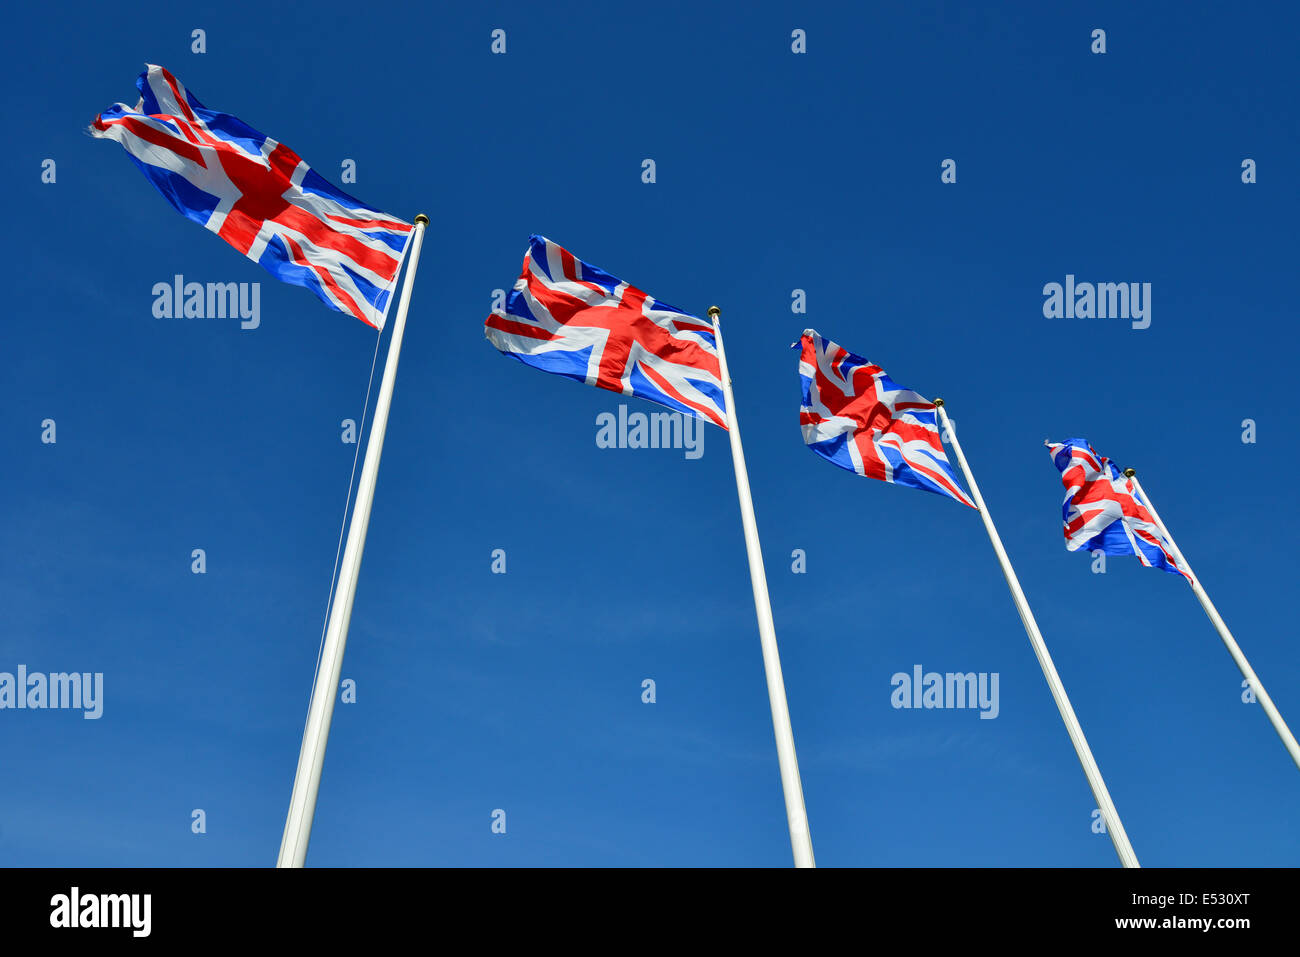 Zeile des Union Jack-Flaggen, Dallas Burton Poloclub, Southam, Warwickshire, England, Vereinigtes Königreich Stockfoto